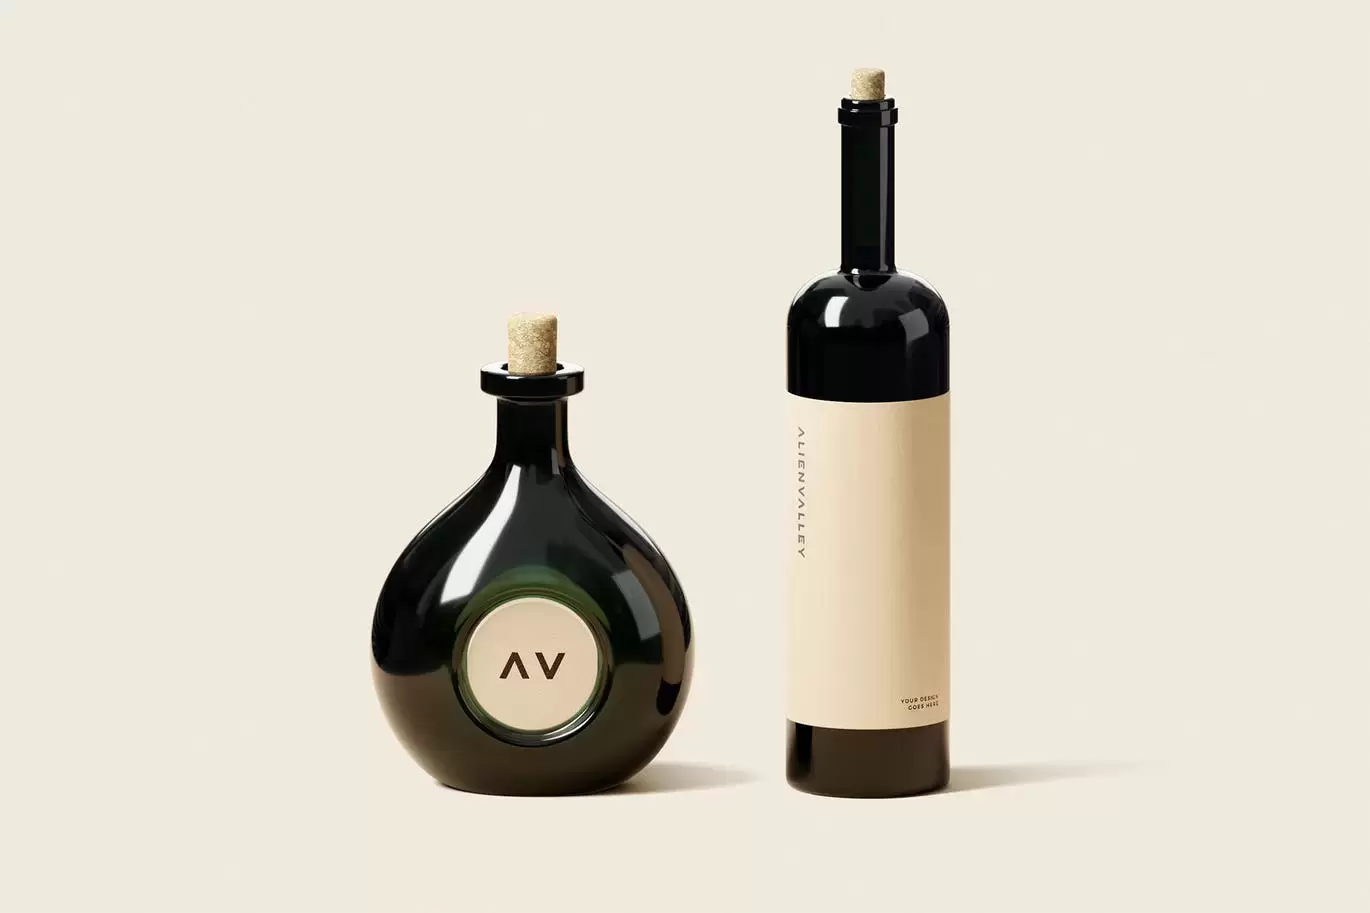 时尚高端专业的红酒葡萄酒洋酒酒瓶包装设计VI样机展示模型mockups免费下载插图